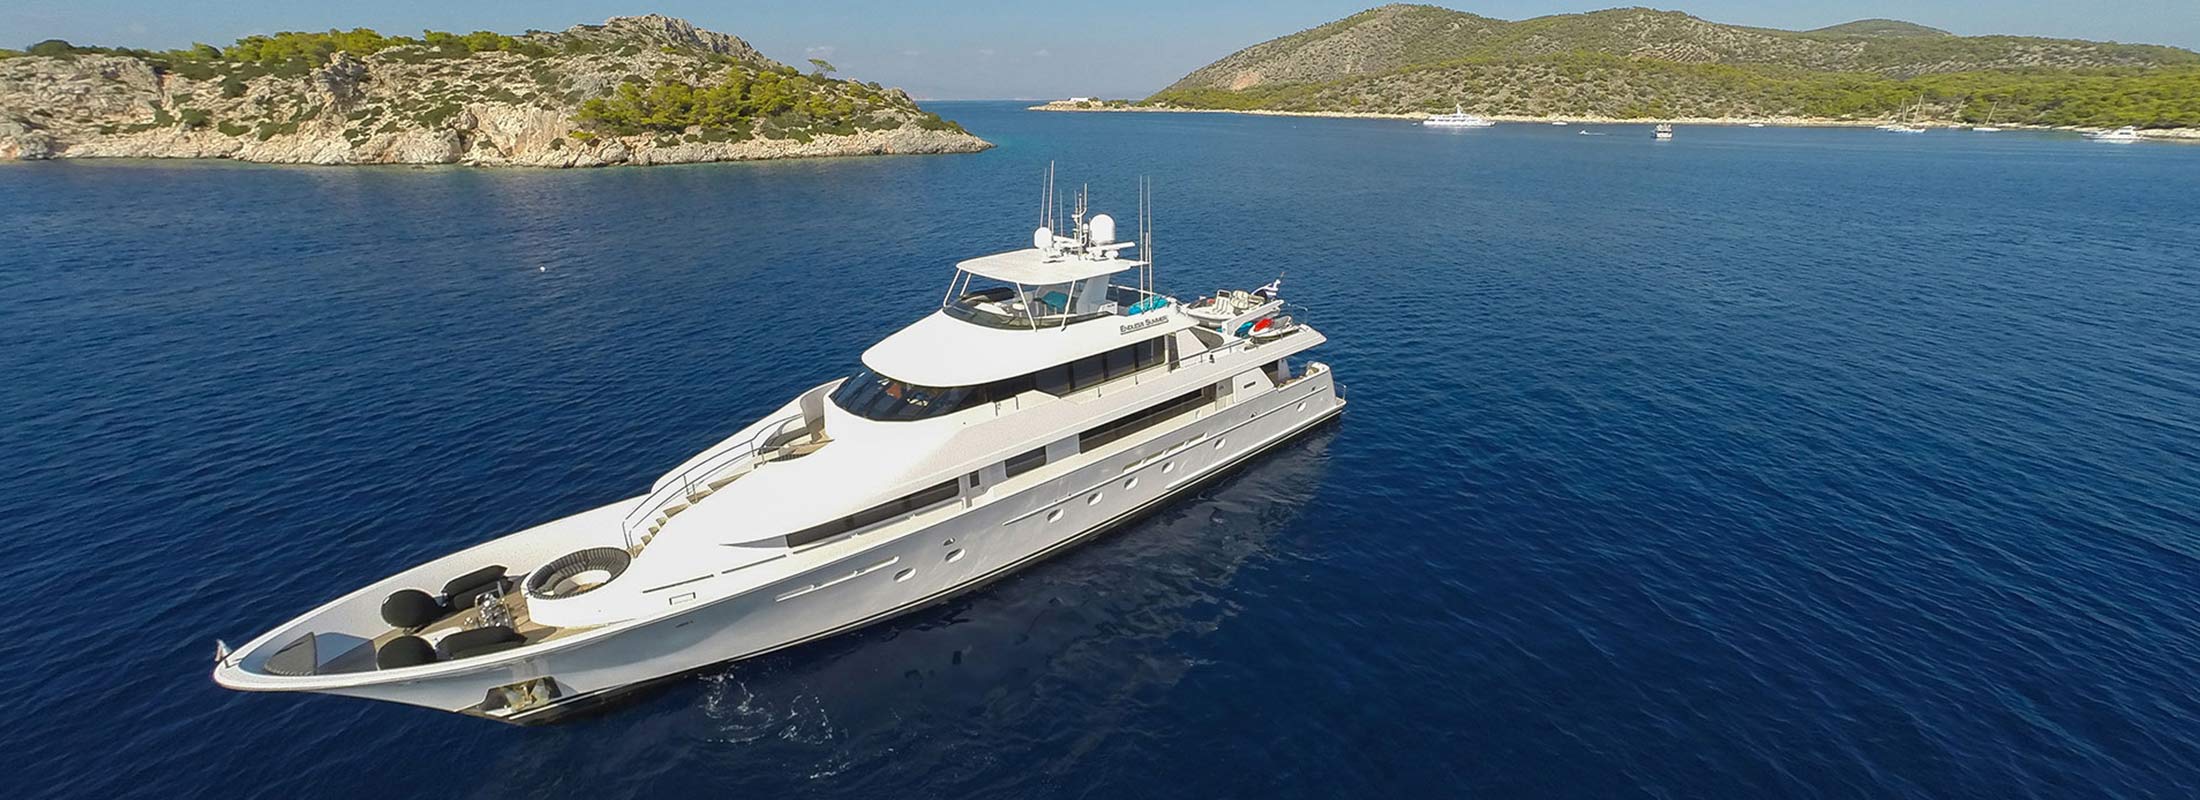 Endless Summer Motor Yacht for Charter Mediterranean slider 2